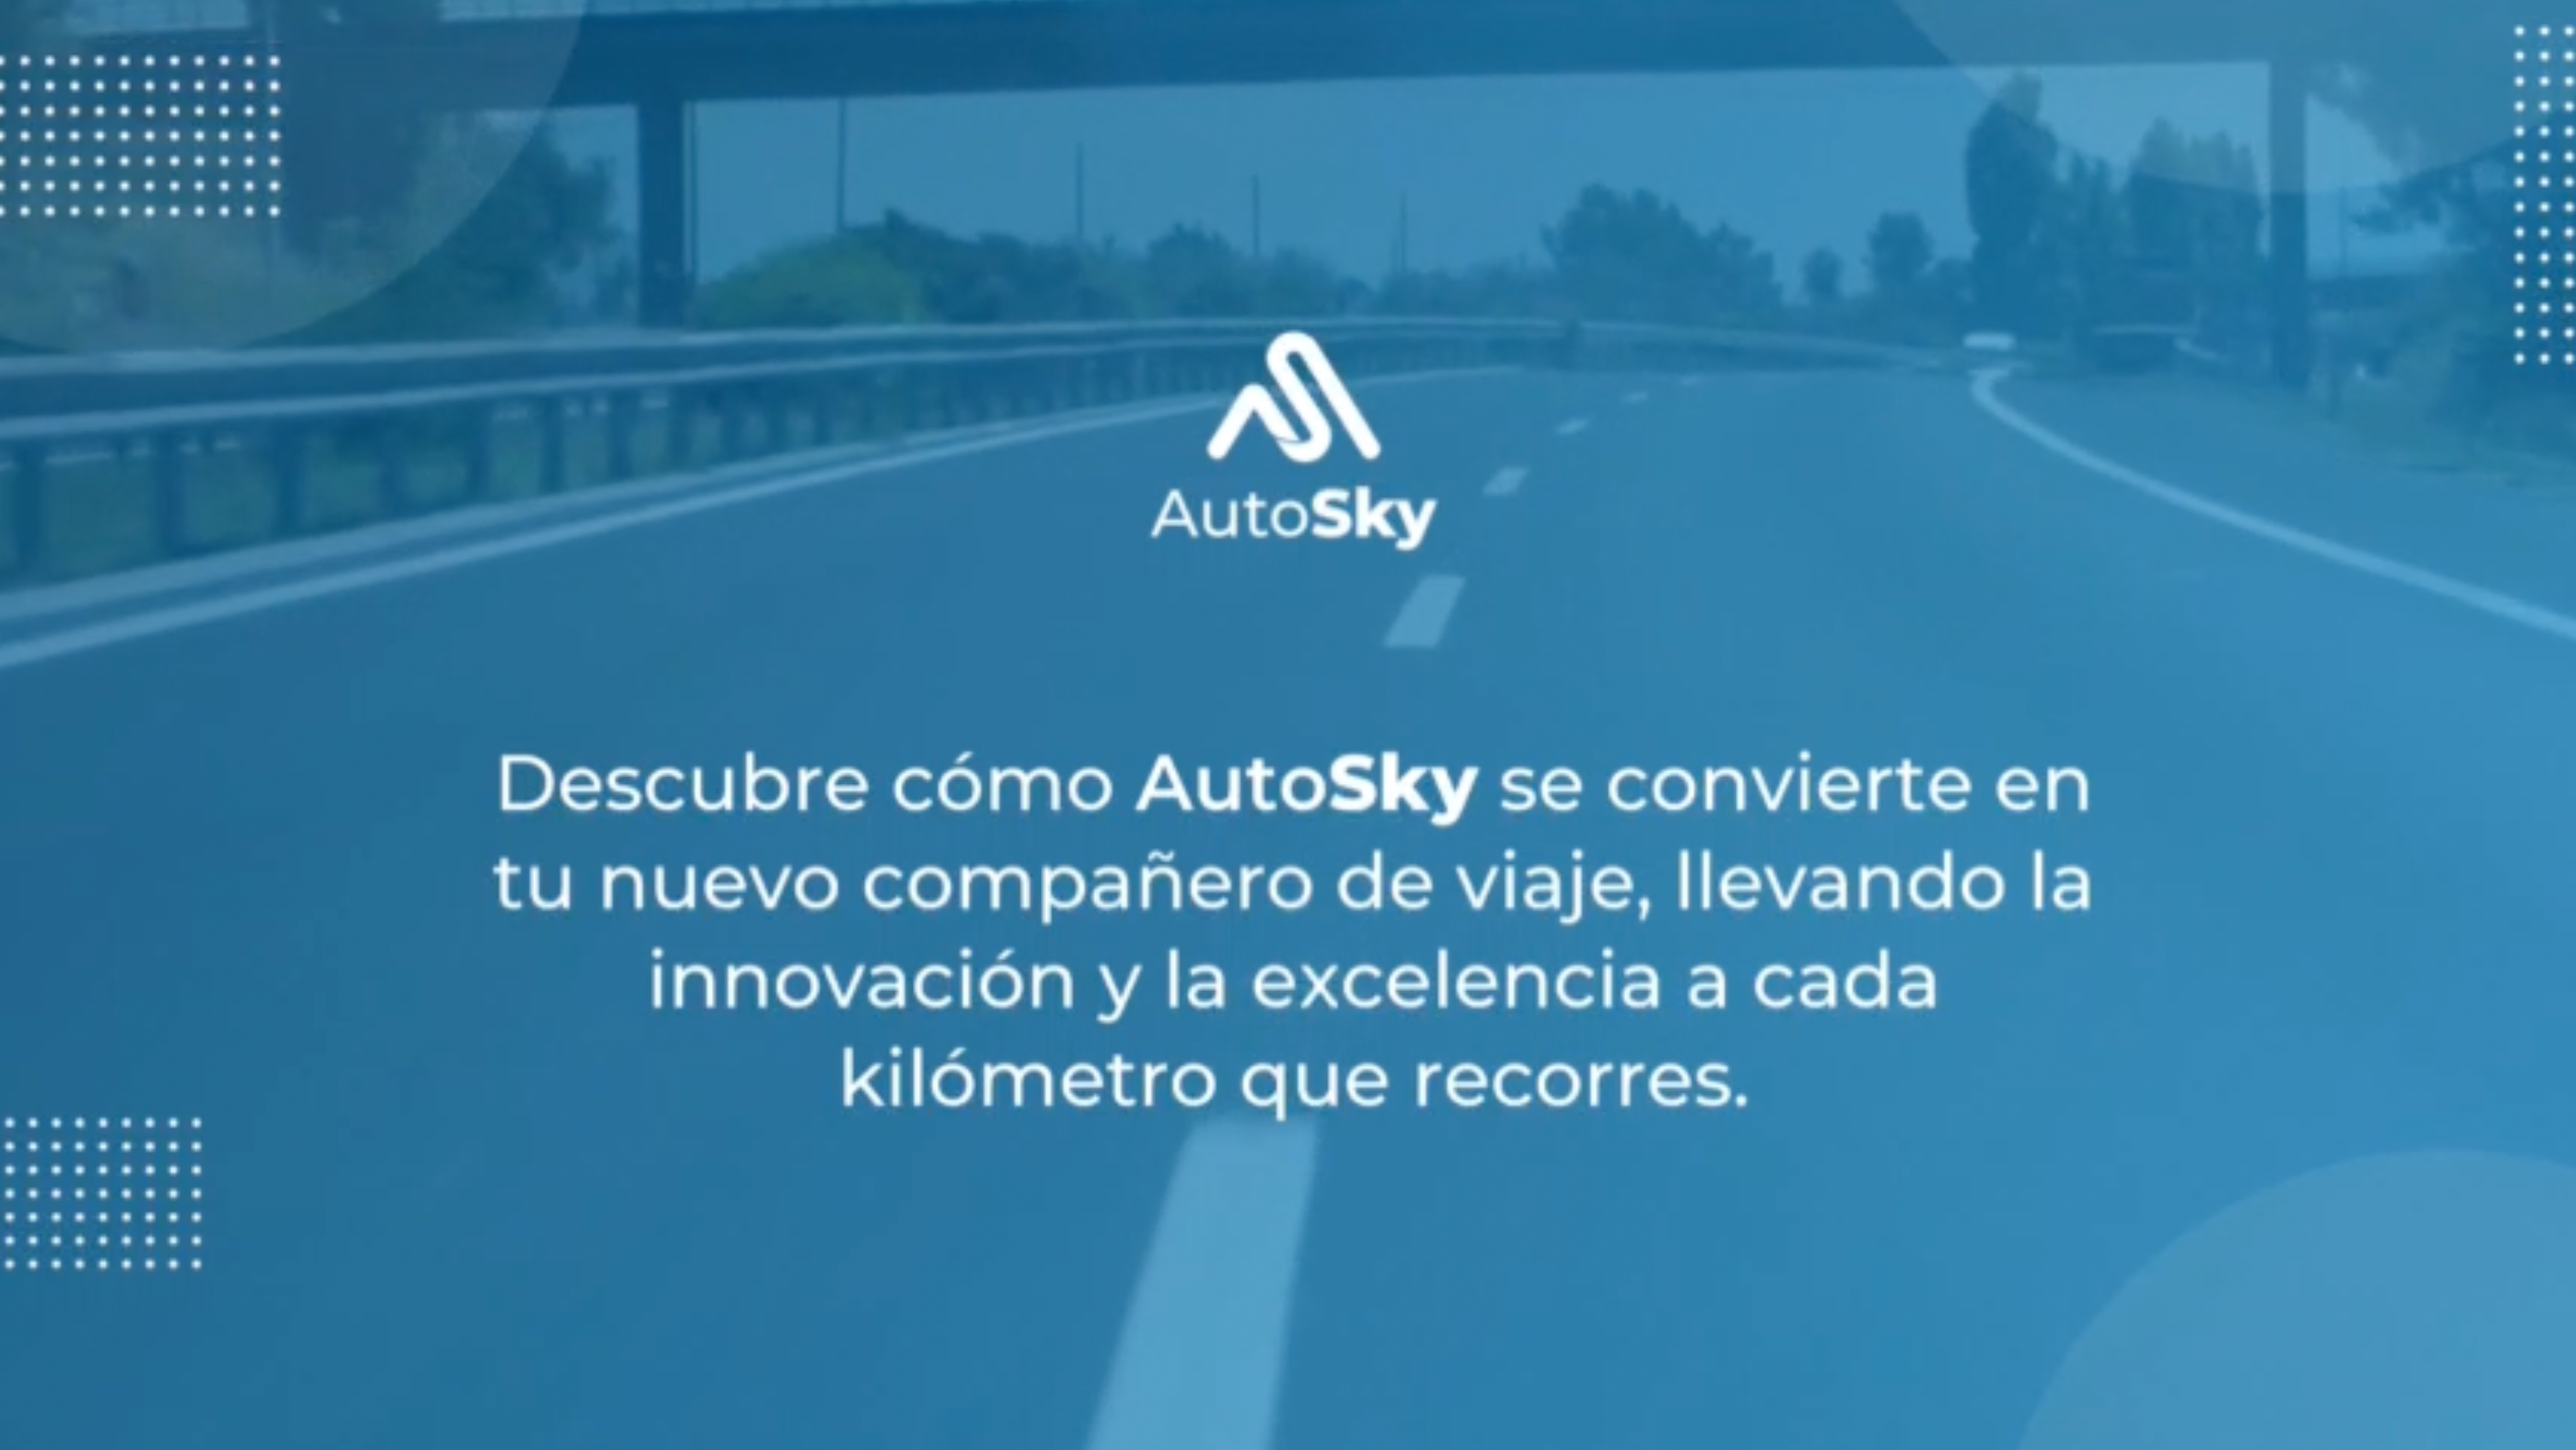 Cargar video: Transforma tu forma de conducir con AutoSkyAutoSky es la innovación en tecnología vehicular que llega a Colombia para transformar tu experiencia de conducción.Nuestros productos están diseñados para satisfacer todas tus necesidades y mucho más, ofreciéndote soluciones avanzadas que llevan tu experiencia al volante al siguiente nivel.Conoce nuestros productosPro SlimADAPTADOR INALÁMBRICO CARPLAYTransforma CarPlay alámbrico de fábrica en inalámbrico,  su acabado estilo fibra de carbón no solo agrega elegancia a tu vehículo, sino que también ofrece una protección duradera contra los arañazos del uso diario.Edición microADAPTADOR INALÁMBRICO CARPLAYConvierte tu CarPlay alámbrico en inalámbrico y disfruta de todas tus aplicaciones favoritas sin cables con nuestro acabado mate, perfecto para adaptarse a cualquier vehículo.Edición DeluxeAi box liteTransforma tu CarPlay o Android Auto con cable en inalámbrico y disfruta de aplicaciones como Netflix y YouTube desde tu carro.Ai box lite plusCon dos módulos Wi-Fi integrados, cambia sin esfuerzo entre CarPlay o Android Auto y el modo Streaming para disfrutar de servicios de entretenimiento como Netflix y YouTube al instante.Nano series ADAPTADOR INALÁMBRICO CARPLAYConvierte tu CarPlay alámbrico en inalámbrico con estilo. Esta versión es la más pequeña del mercado y te permite disfrutar todas tus aplicaciones favoritas sin cables.Nano series ADAPTADOR INALÁMBRICO ANDROID AUTO Da el salto a un Android Auto inalámbrico con estilo. Nuestra versión más compacta te permite disfrutar de todas tus aplicaciones favoritas sin cables.Descubre cómo AutoSky se convierte en tu nuevo compañero de viaje, llevando la innovación y la excelencia a cada kilómetro que recorres.